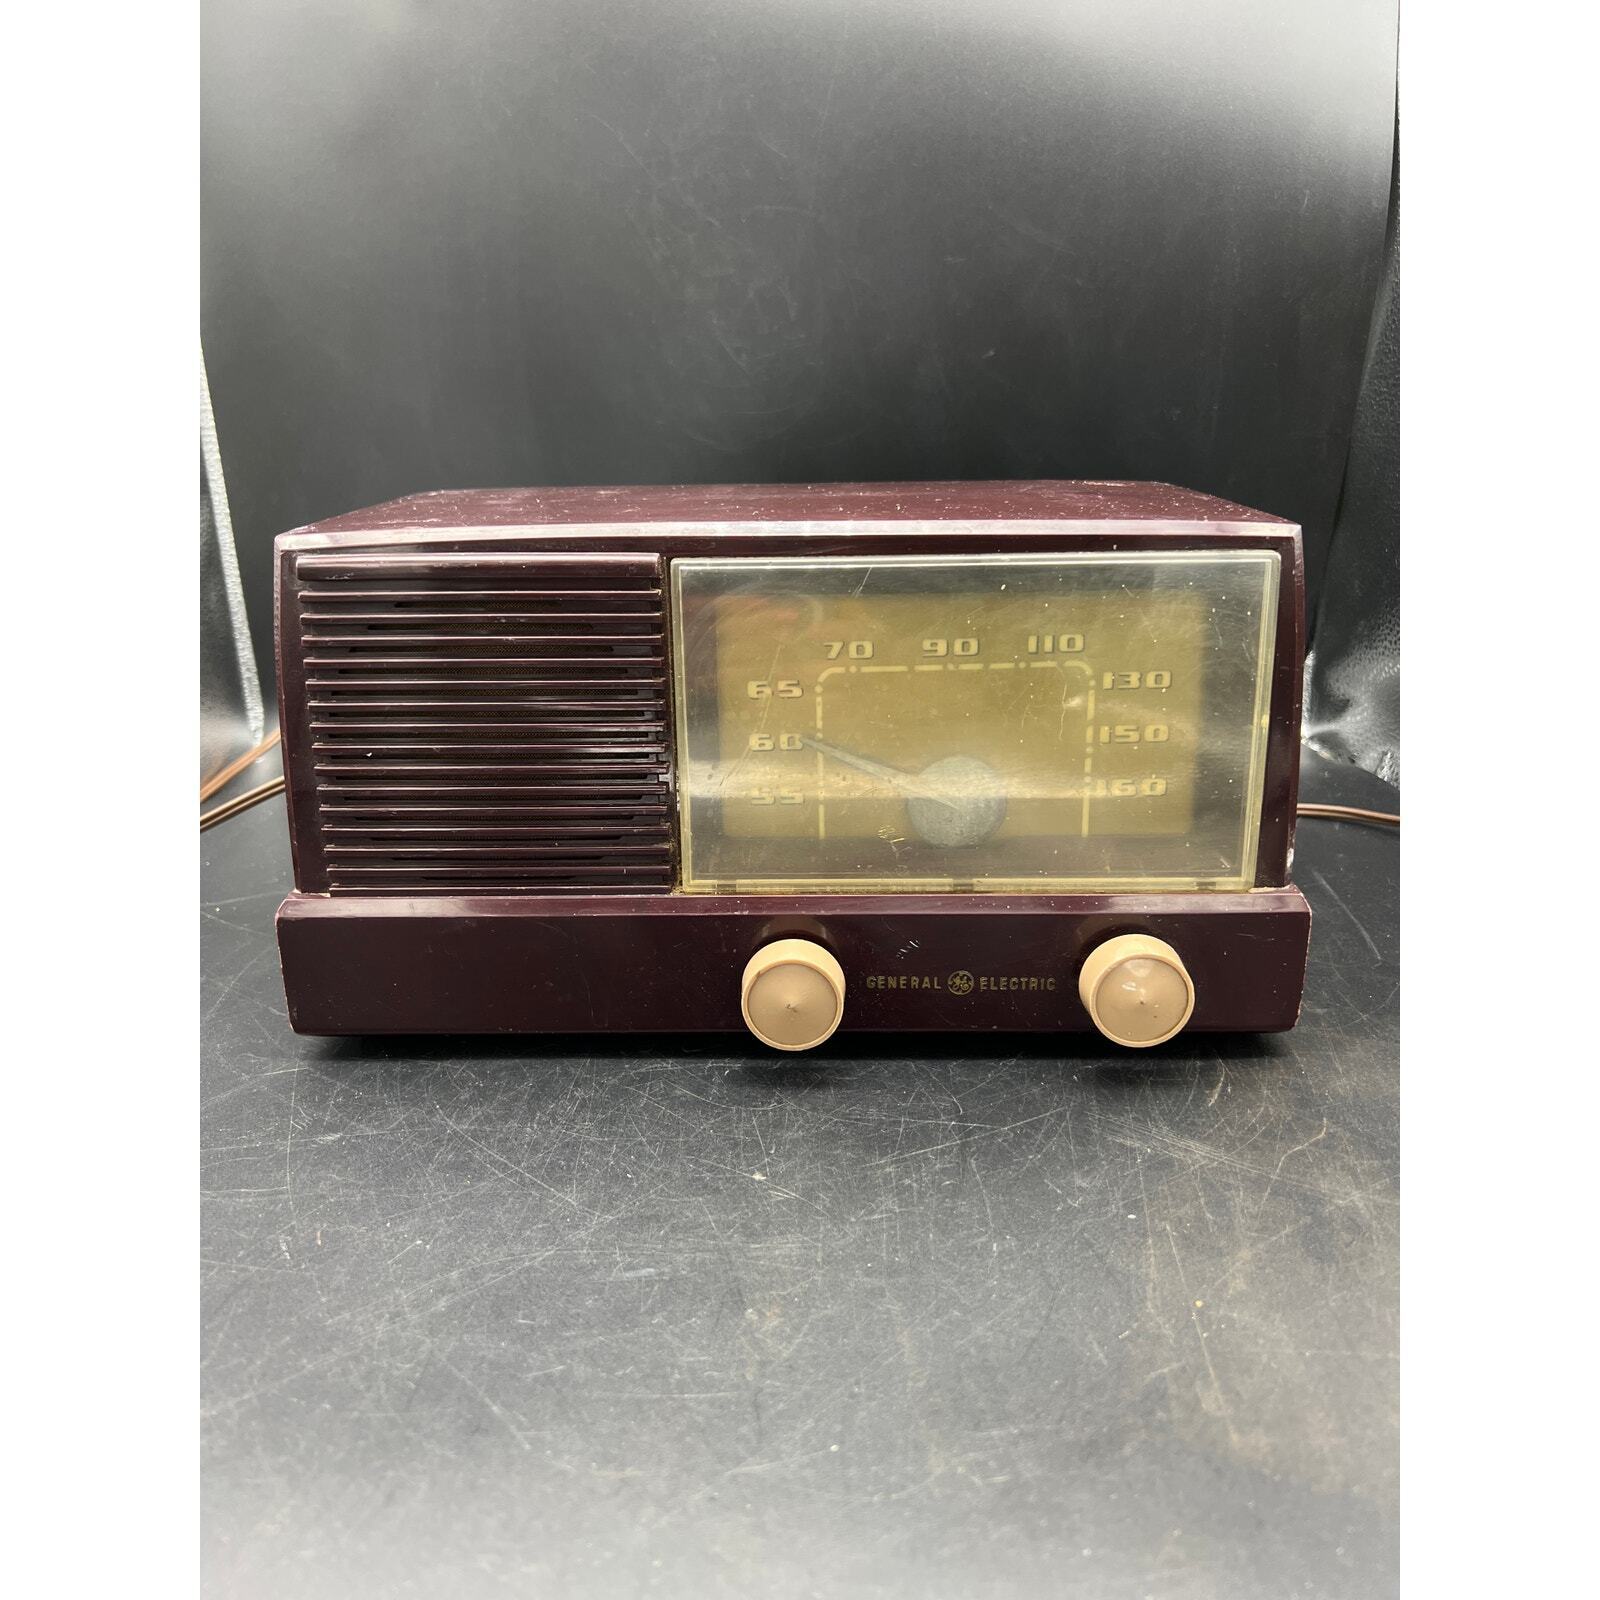 Vintage 1951 General Electric Tube Radio Model #414